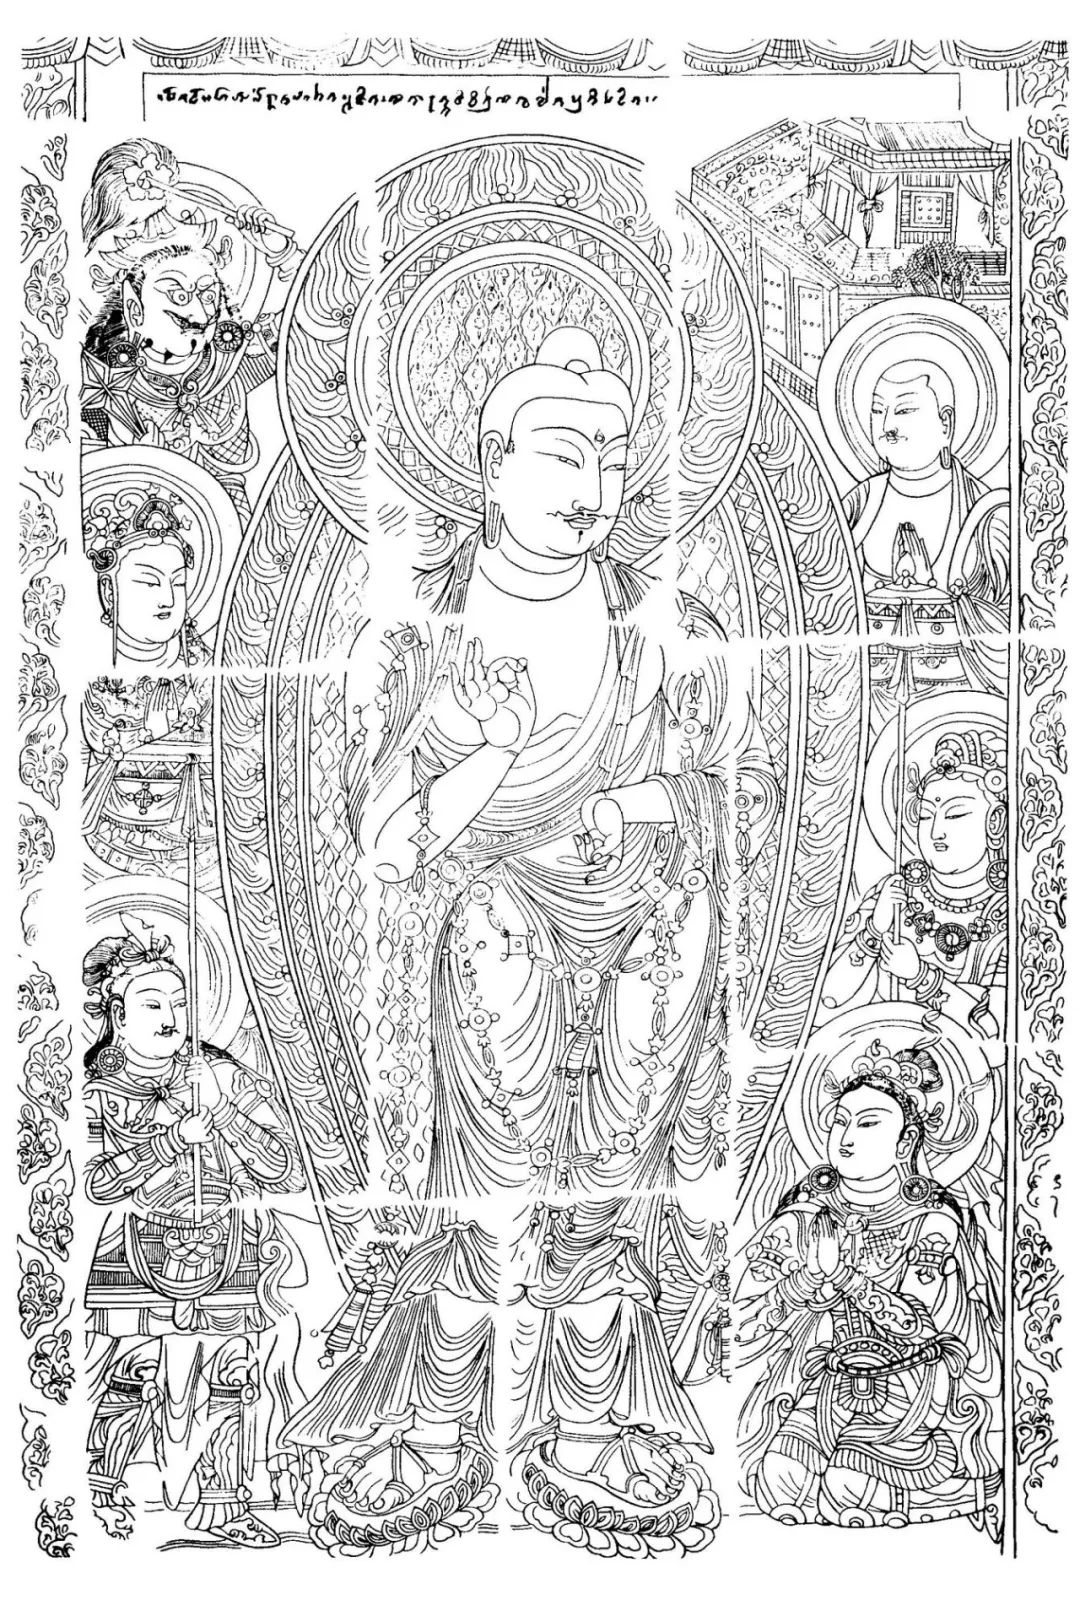 原创新疆佛教壁画线描艺术下